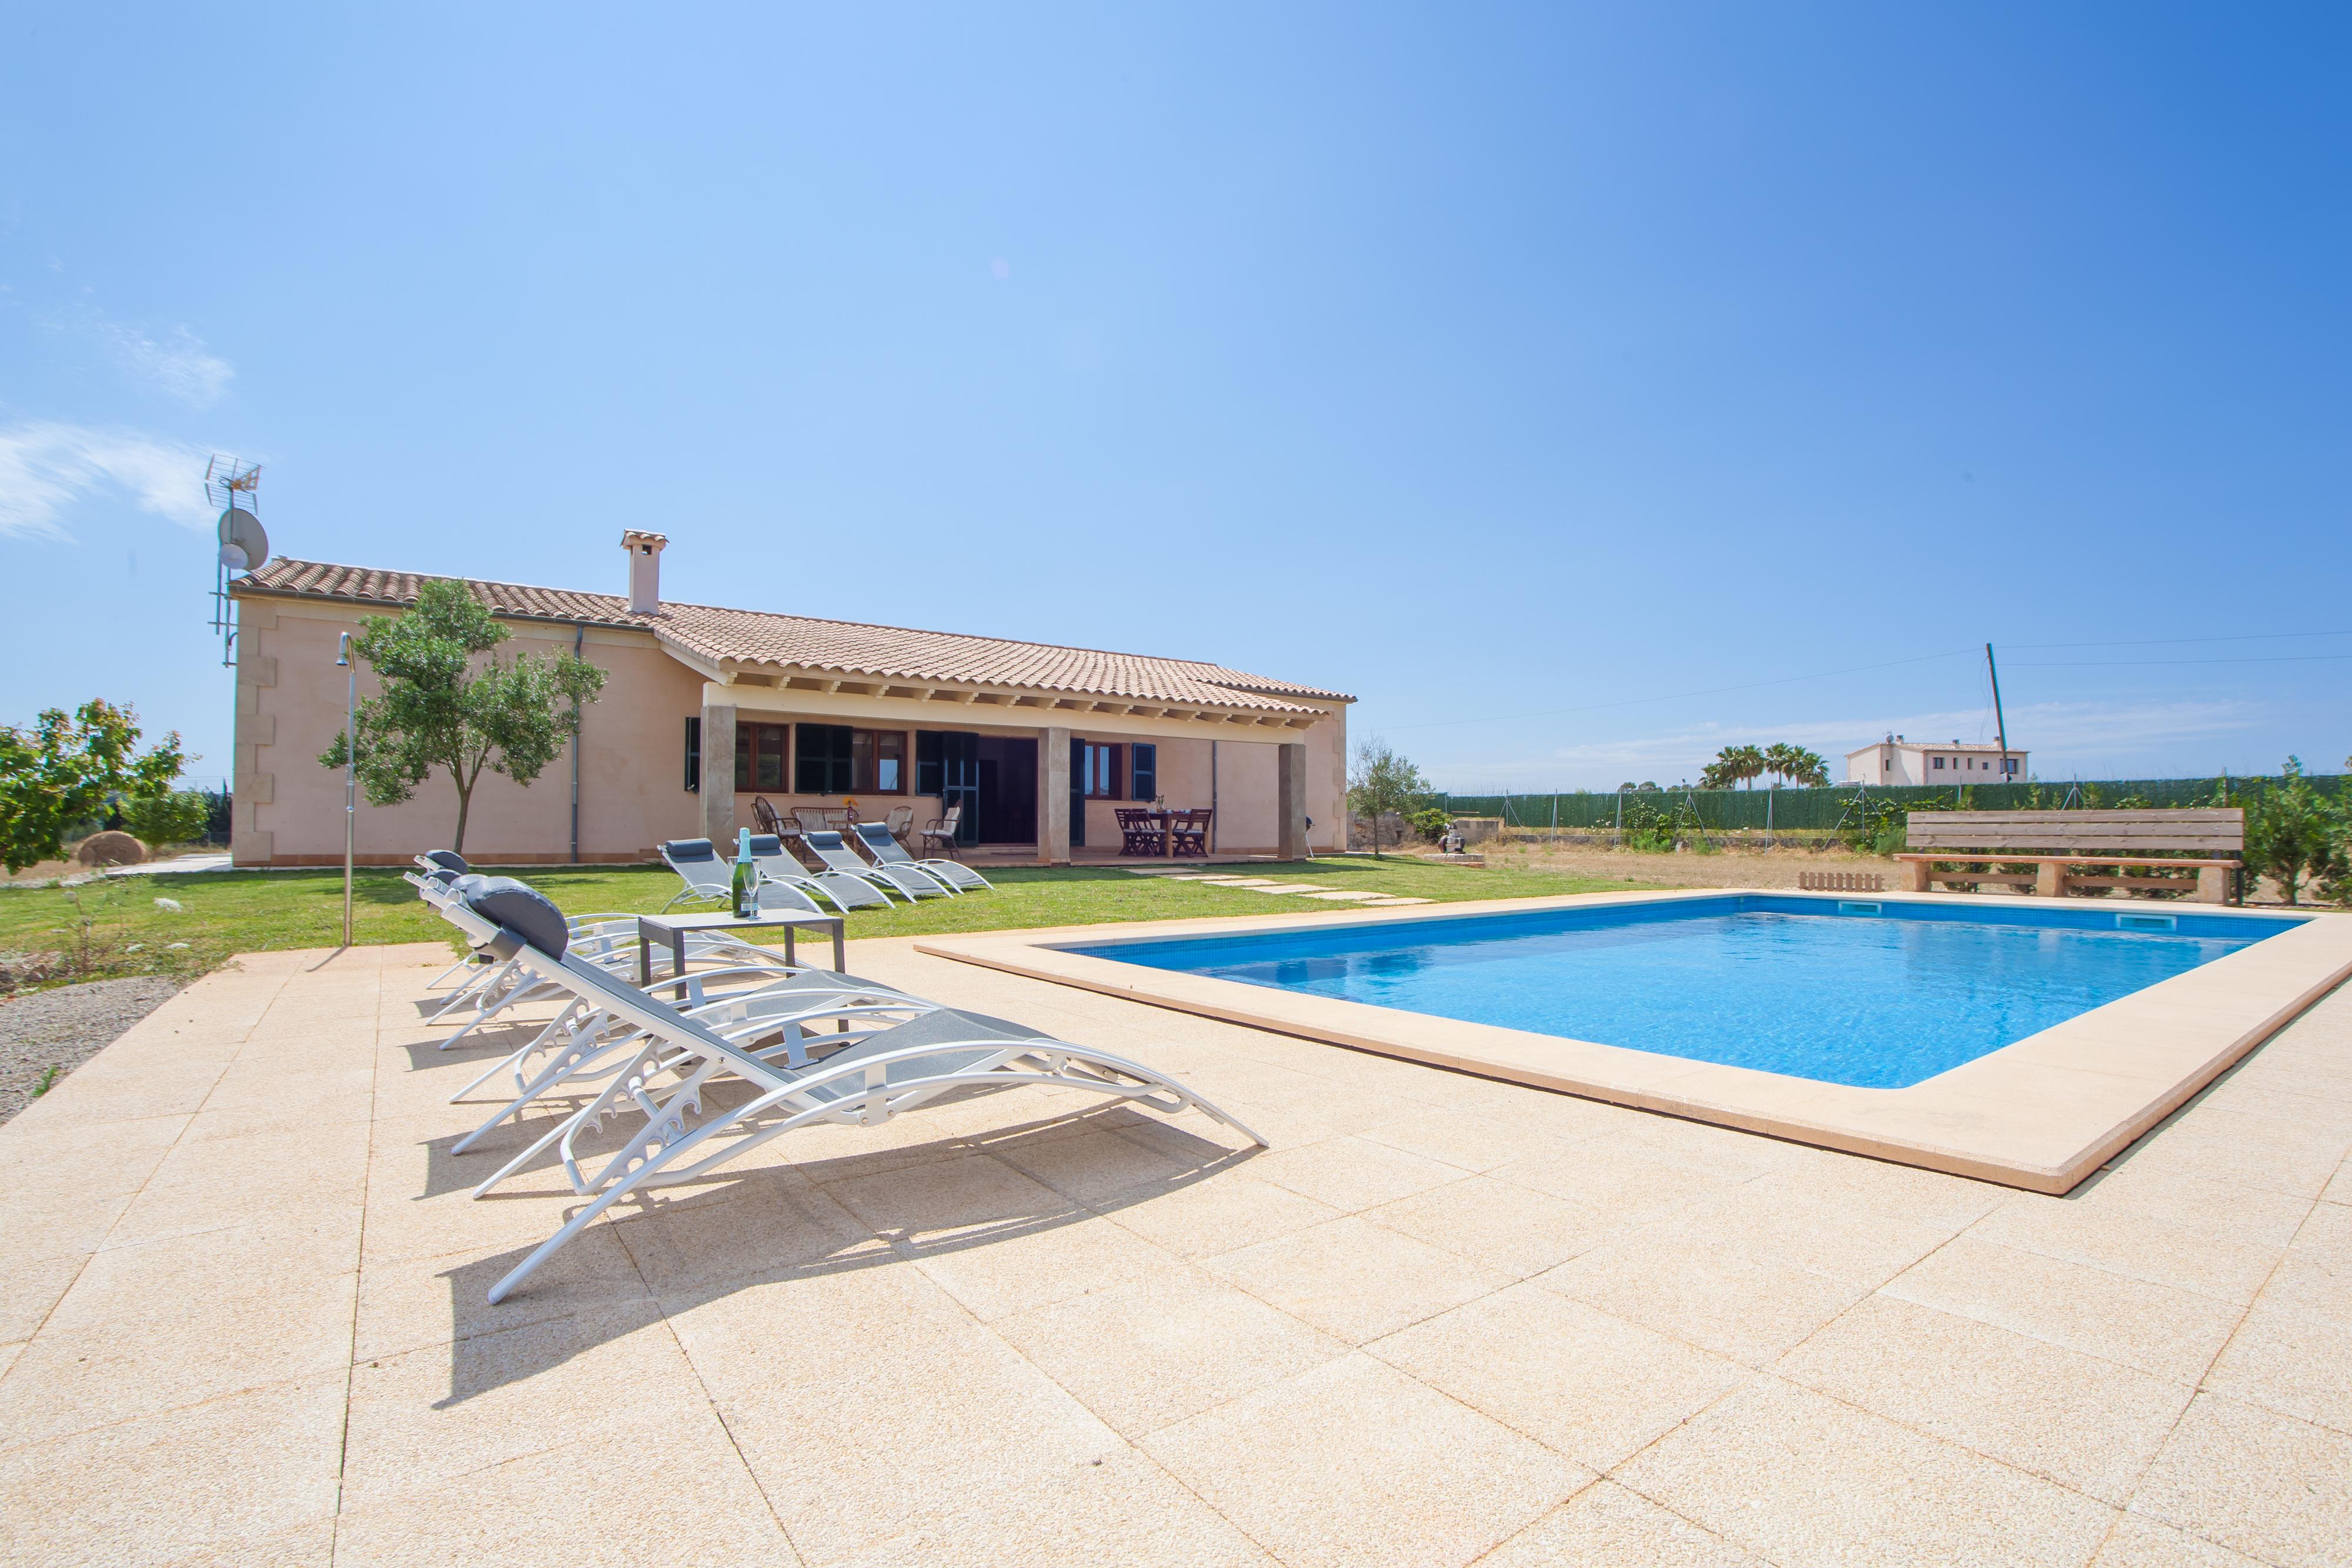 Property Image 2 - S’ESTACIO - Villa with private pool in Muro. Free WiFi